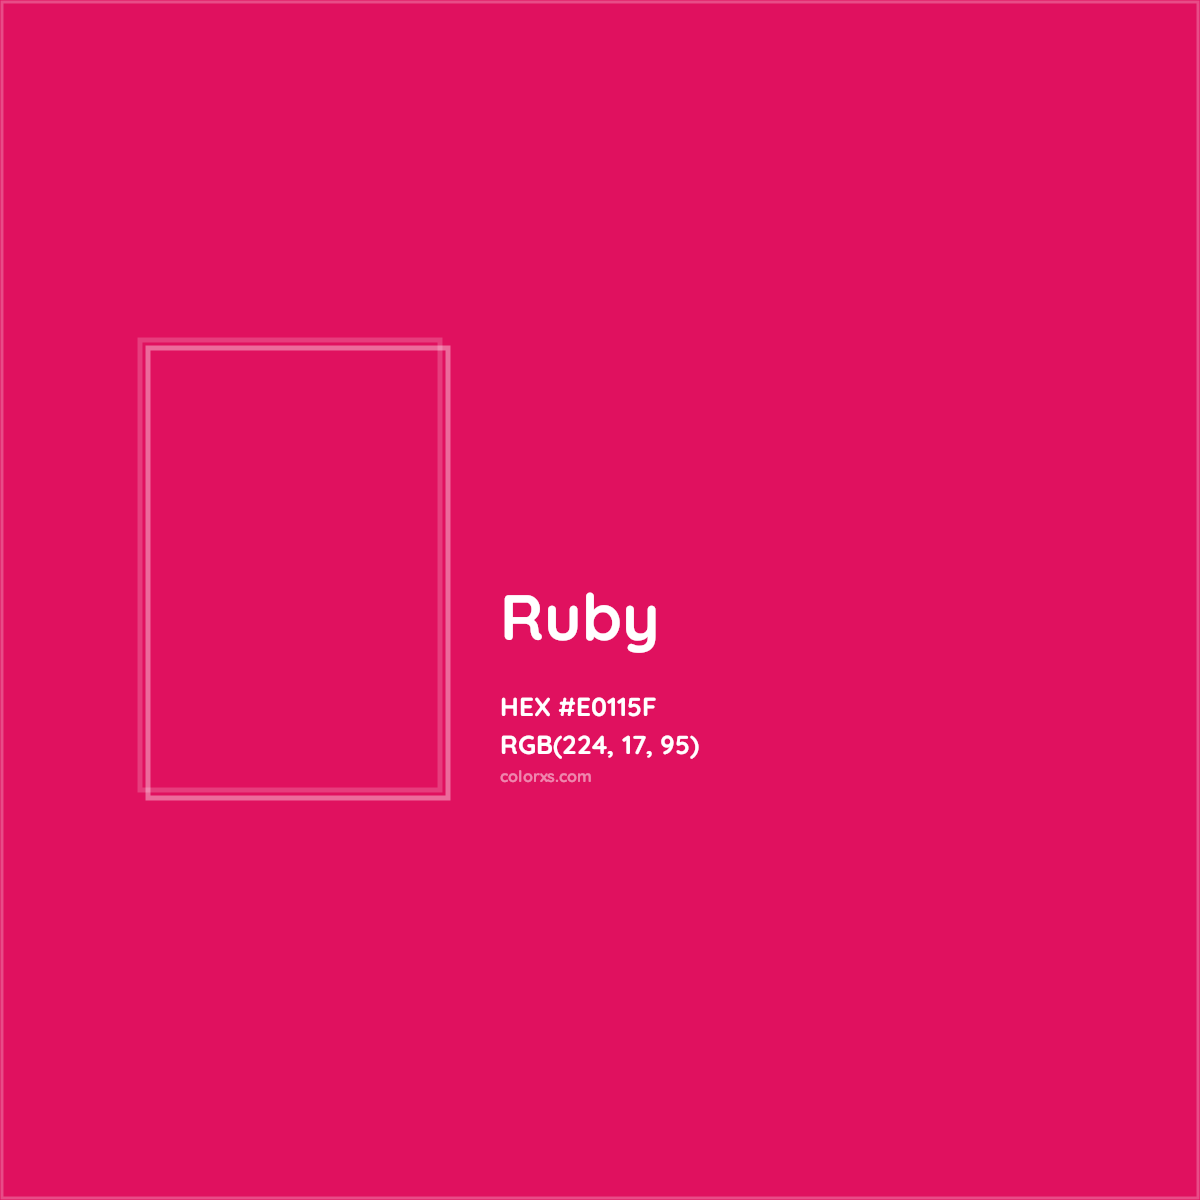 HEX #E0115F Ruby Color - Color Code